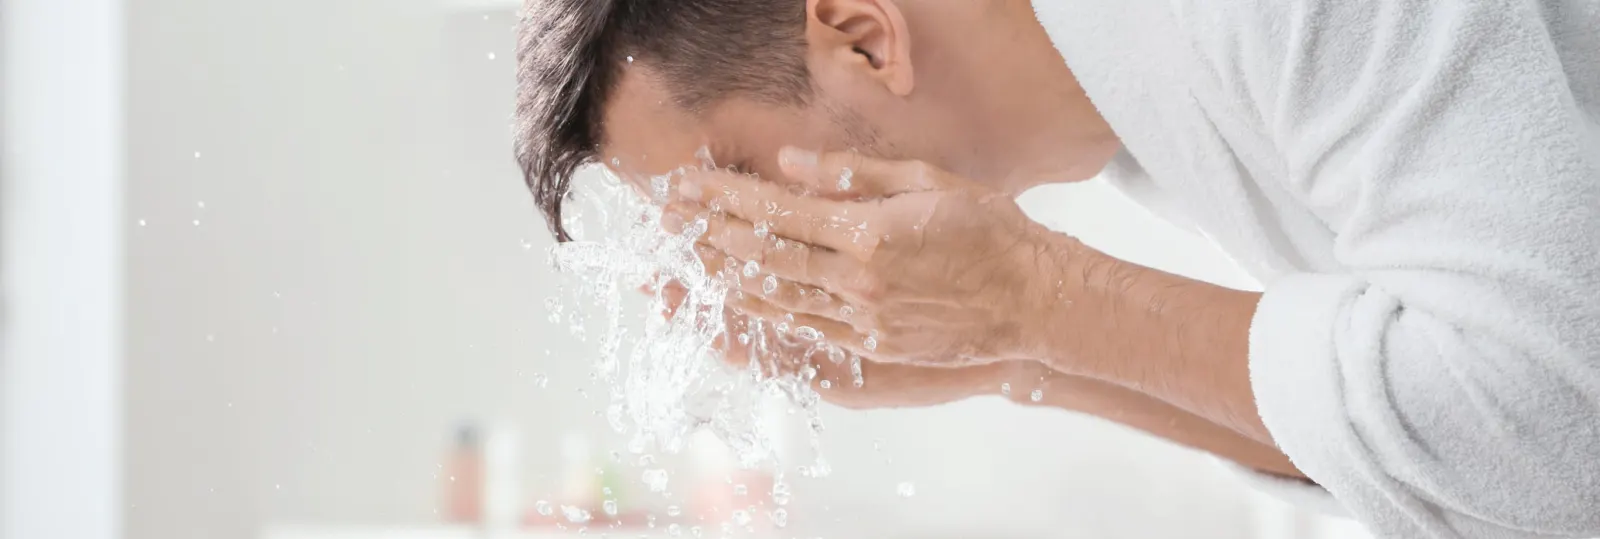 Comment éviter la peau tendue ou sèche après le rasage